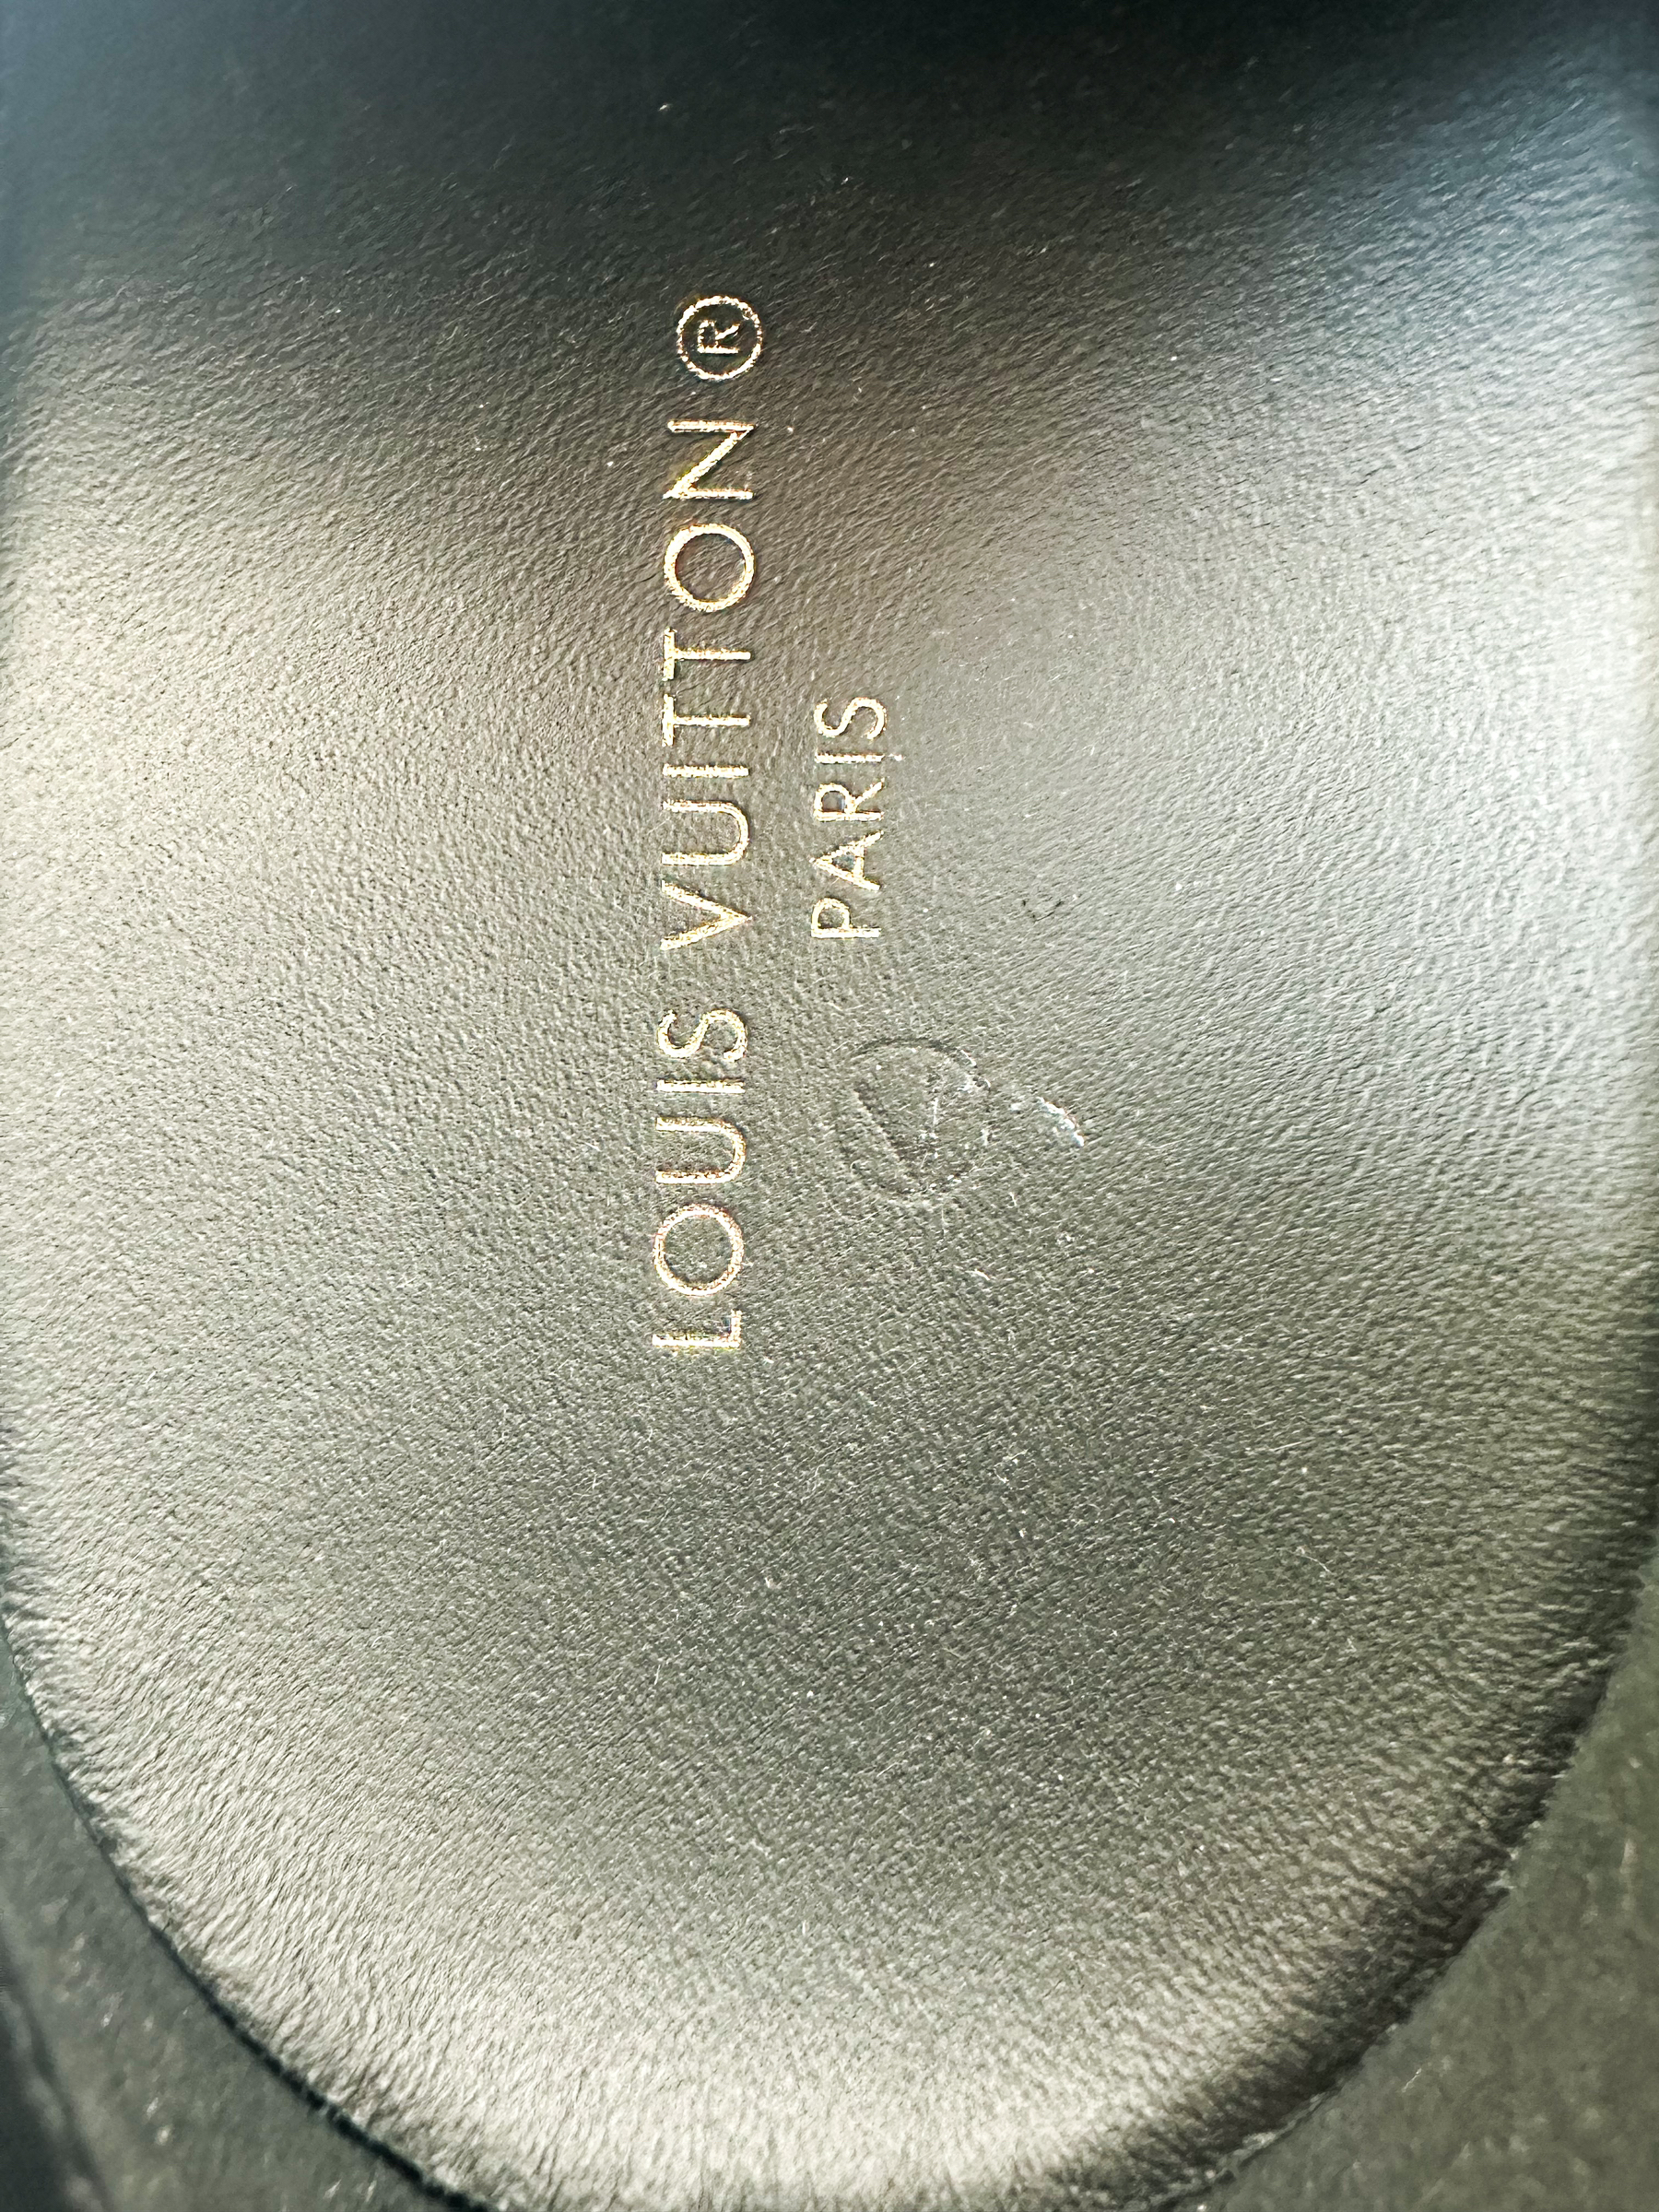 Louis Vuitton Run Away Iridescent Black